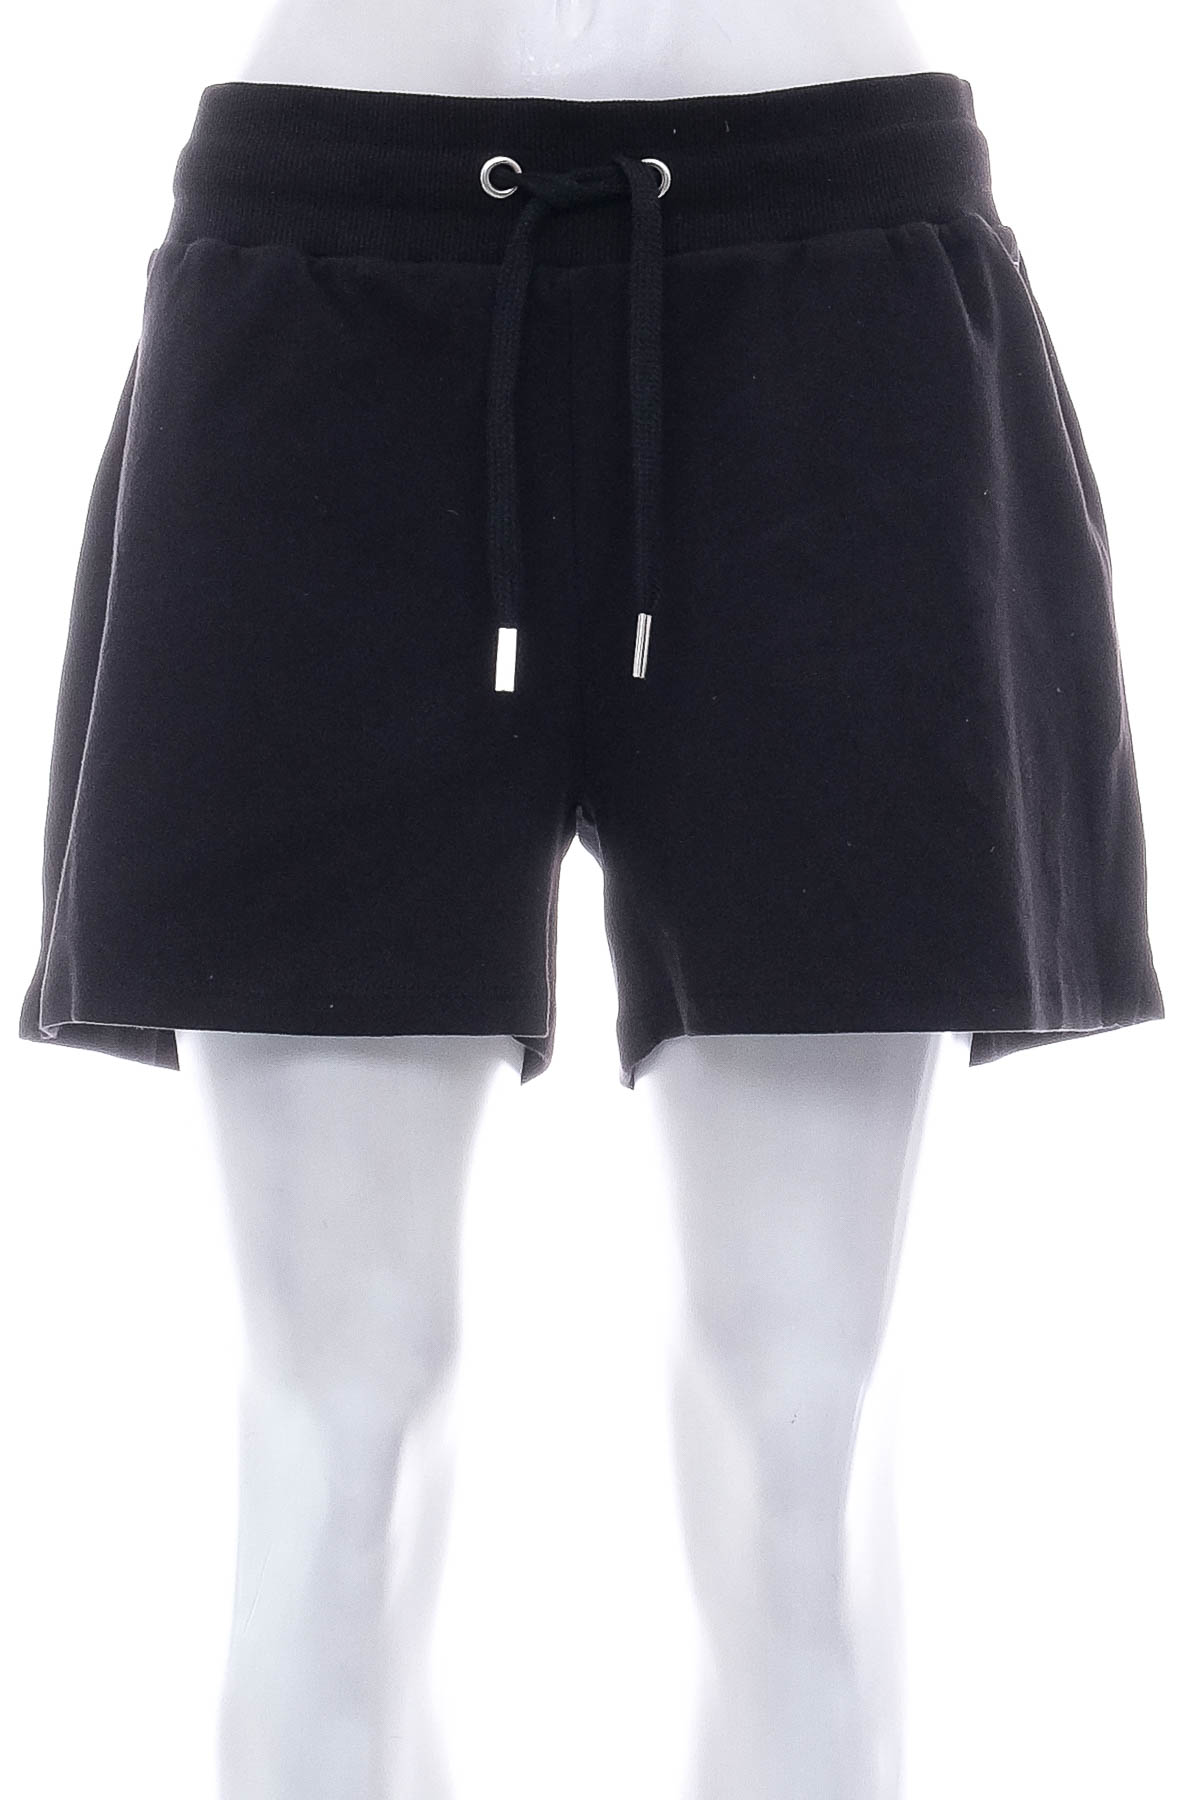 Female shorts - Lascana - 0